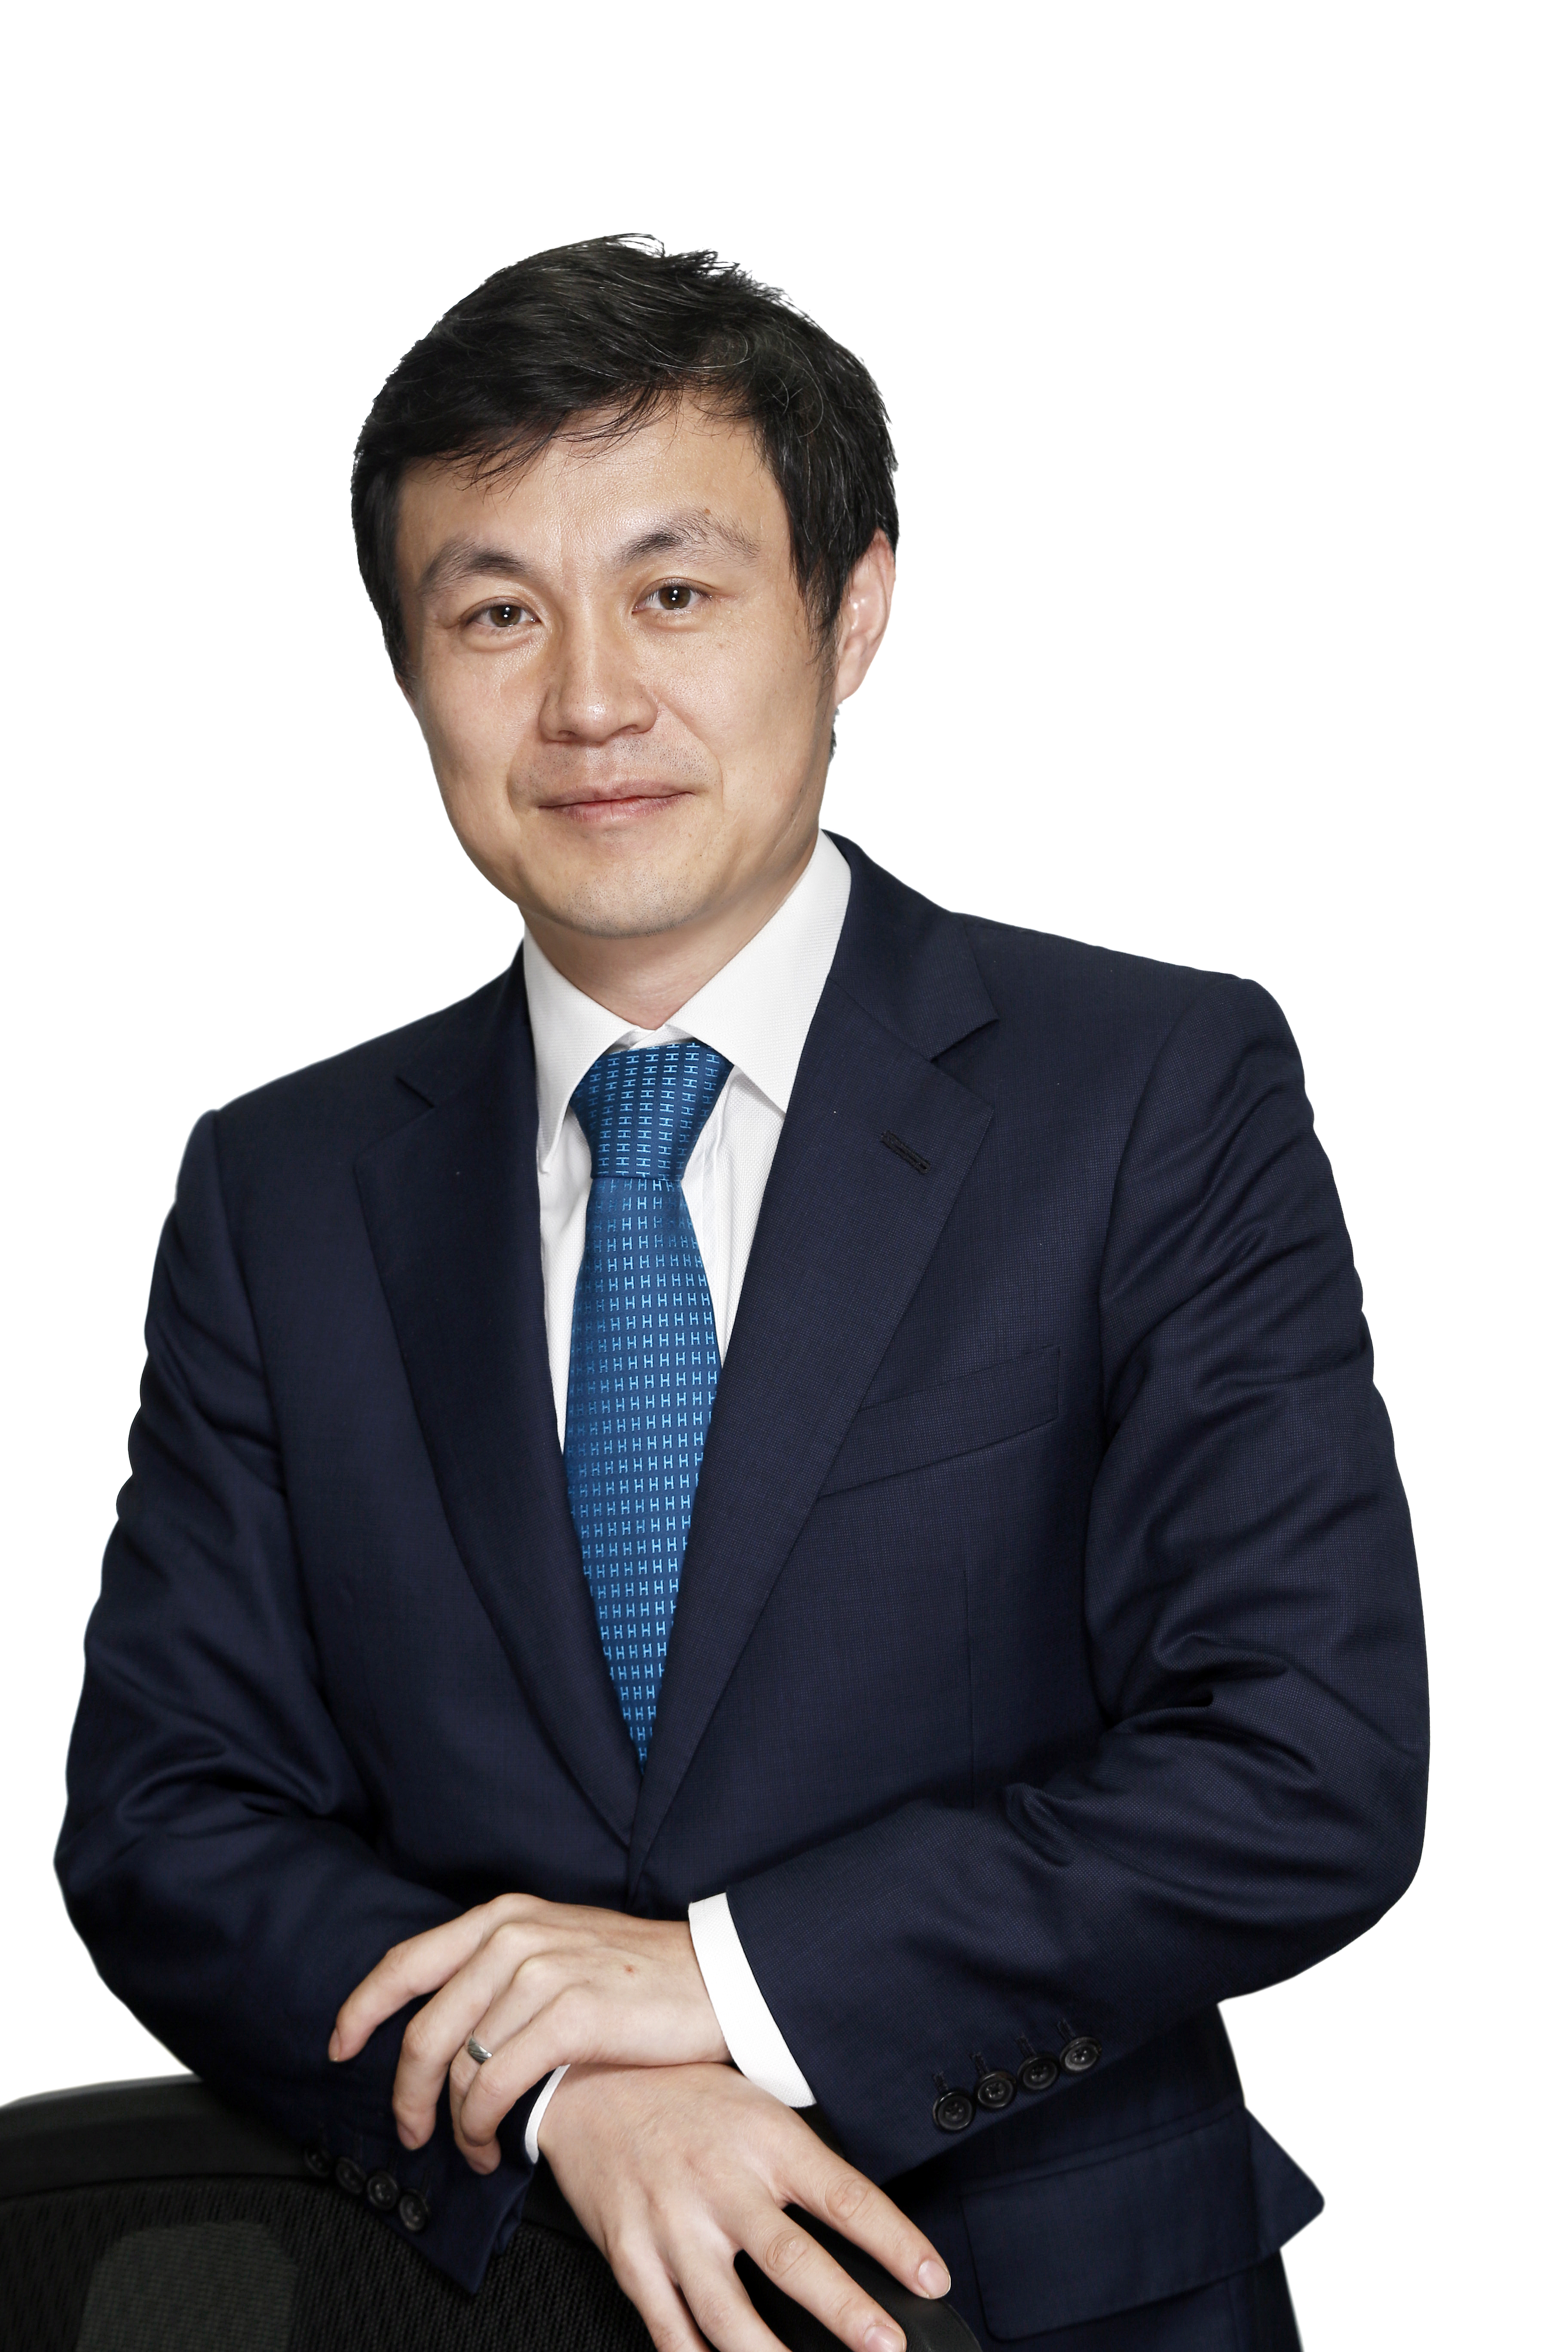 Mr. Xiaoguang Yang